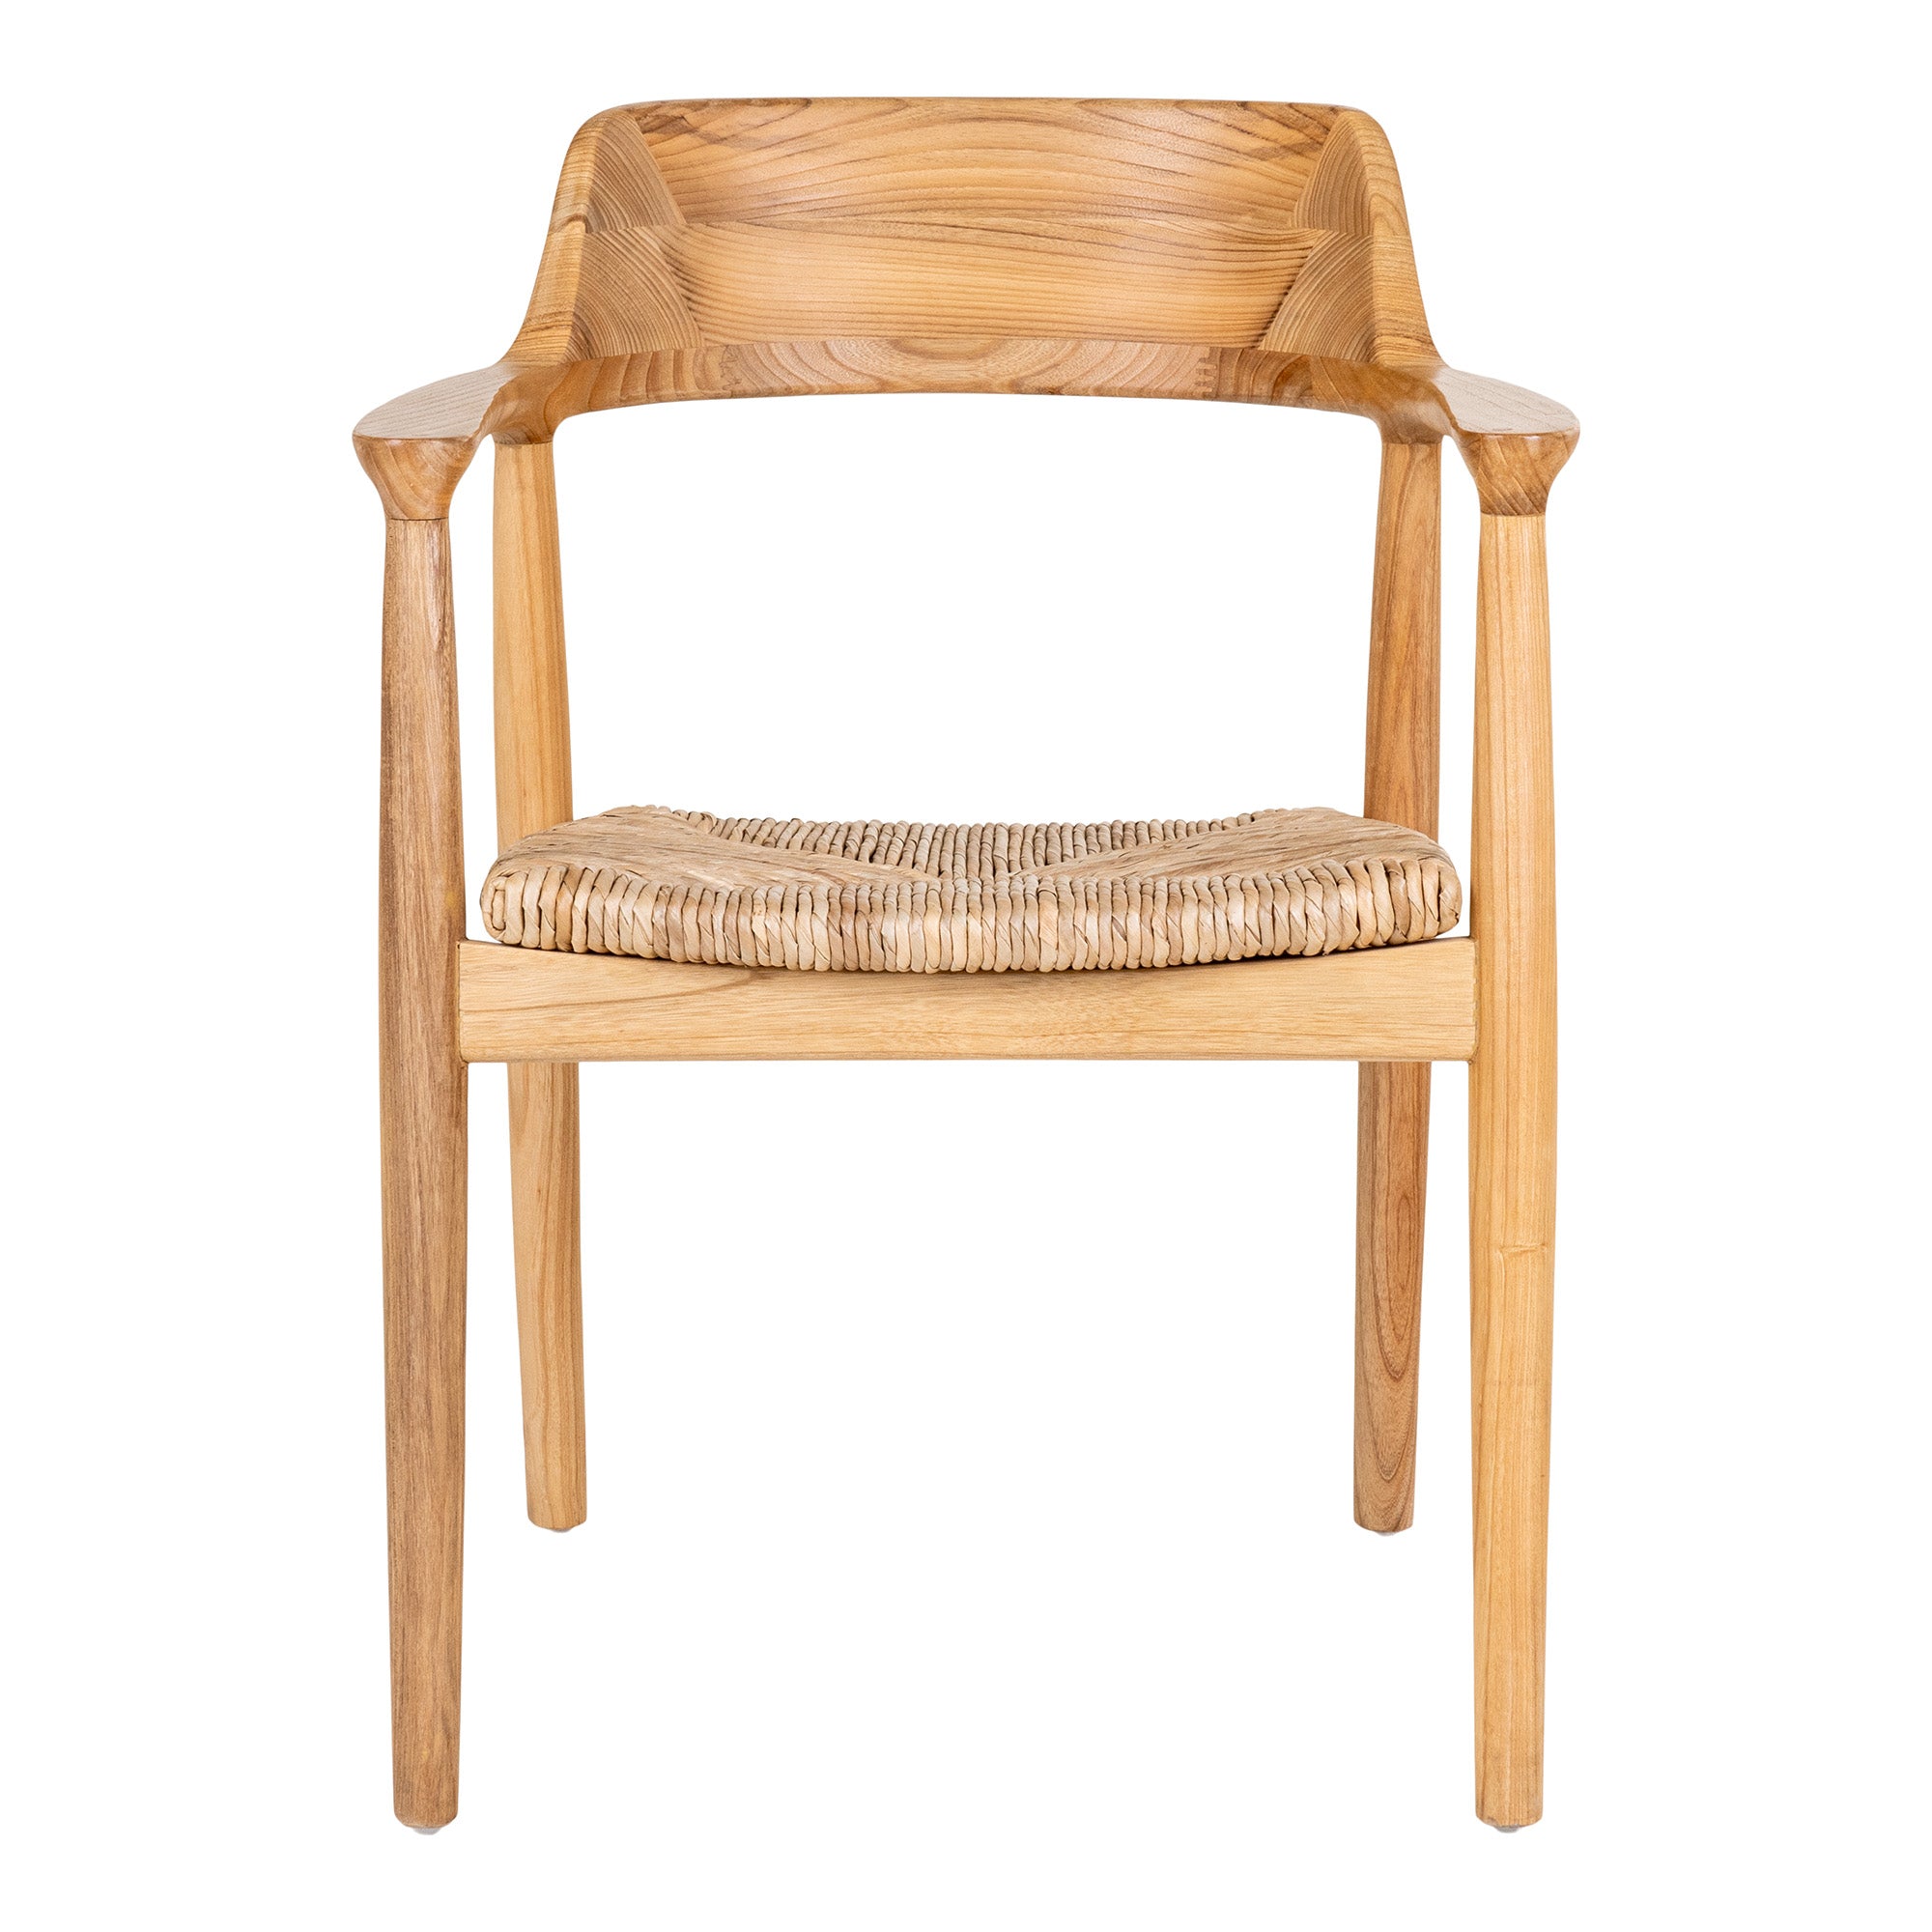 Getafe Spisebordsstol - Spisebordsstol I Sungkai Træ, Natur ⎮ Sæt af 2 stk. ⎮ 5713917024896 ⎮ 7001147 